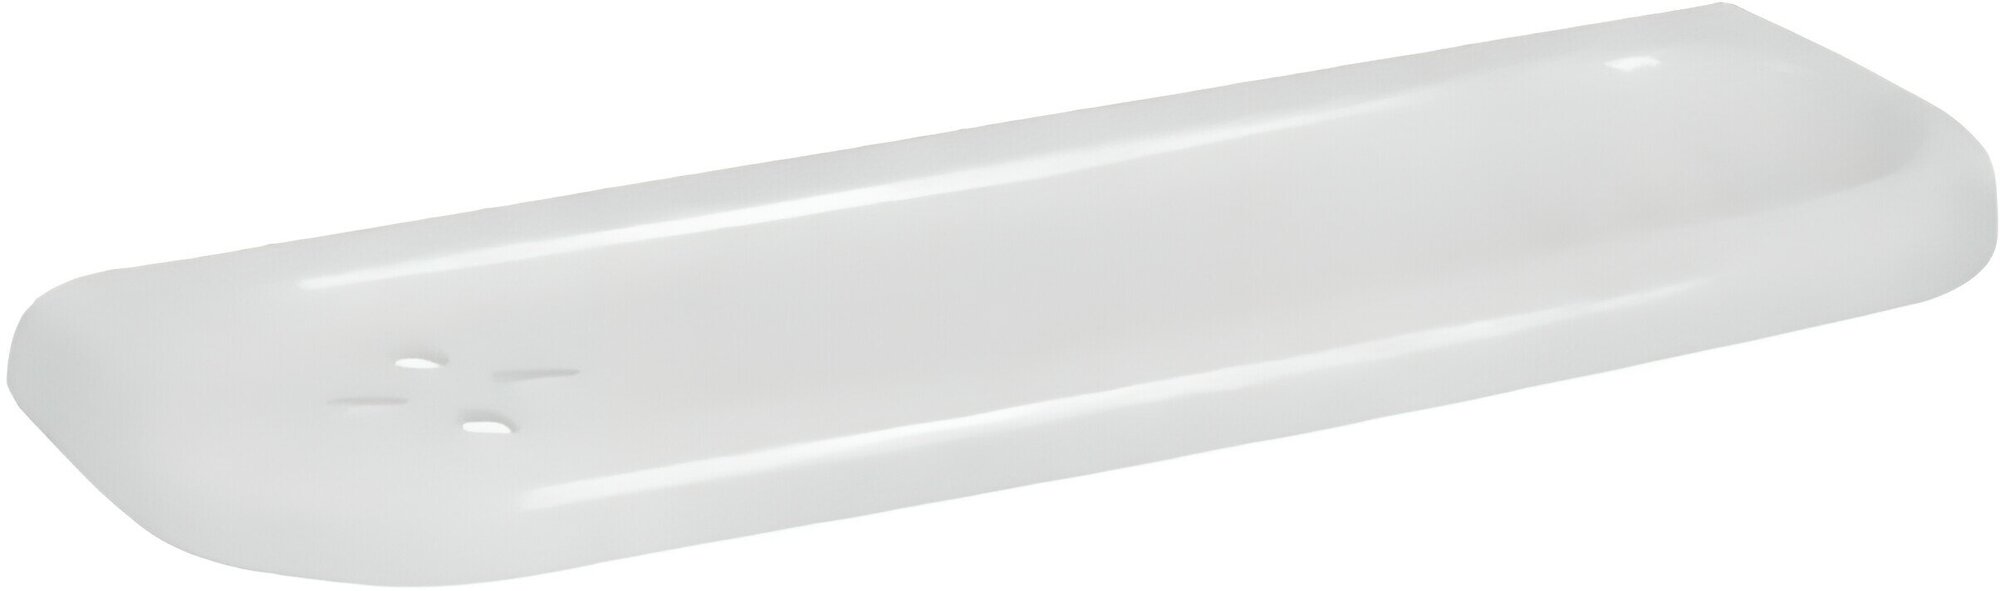 Пластиковая полка размером 405x150x40 мм для ванной комнаты цвет белый настенное крепление. Поможет организовать удобное хранение флаконов и баночек